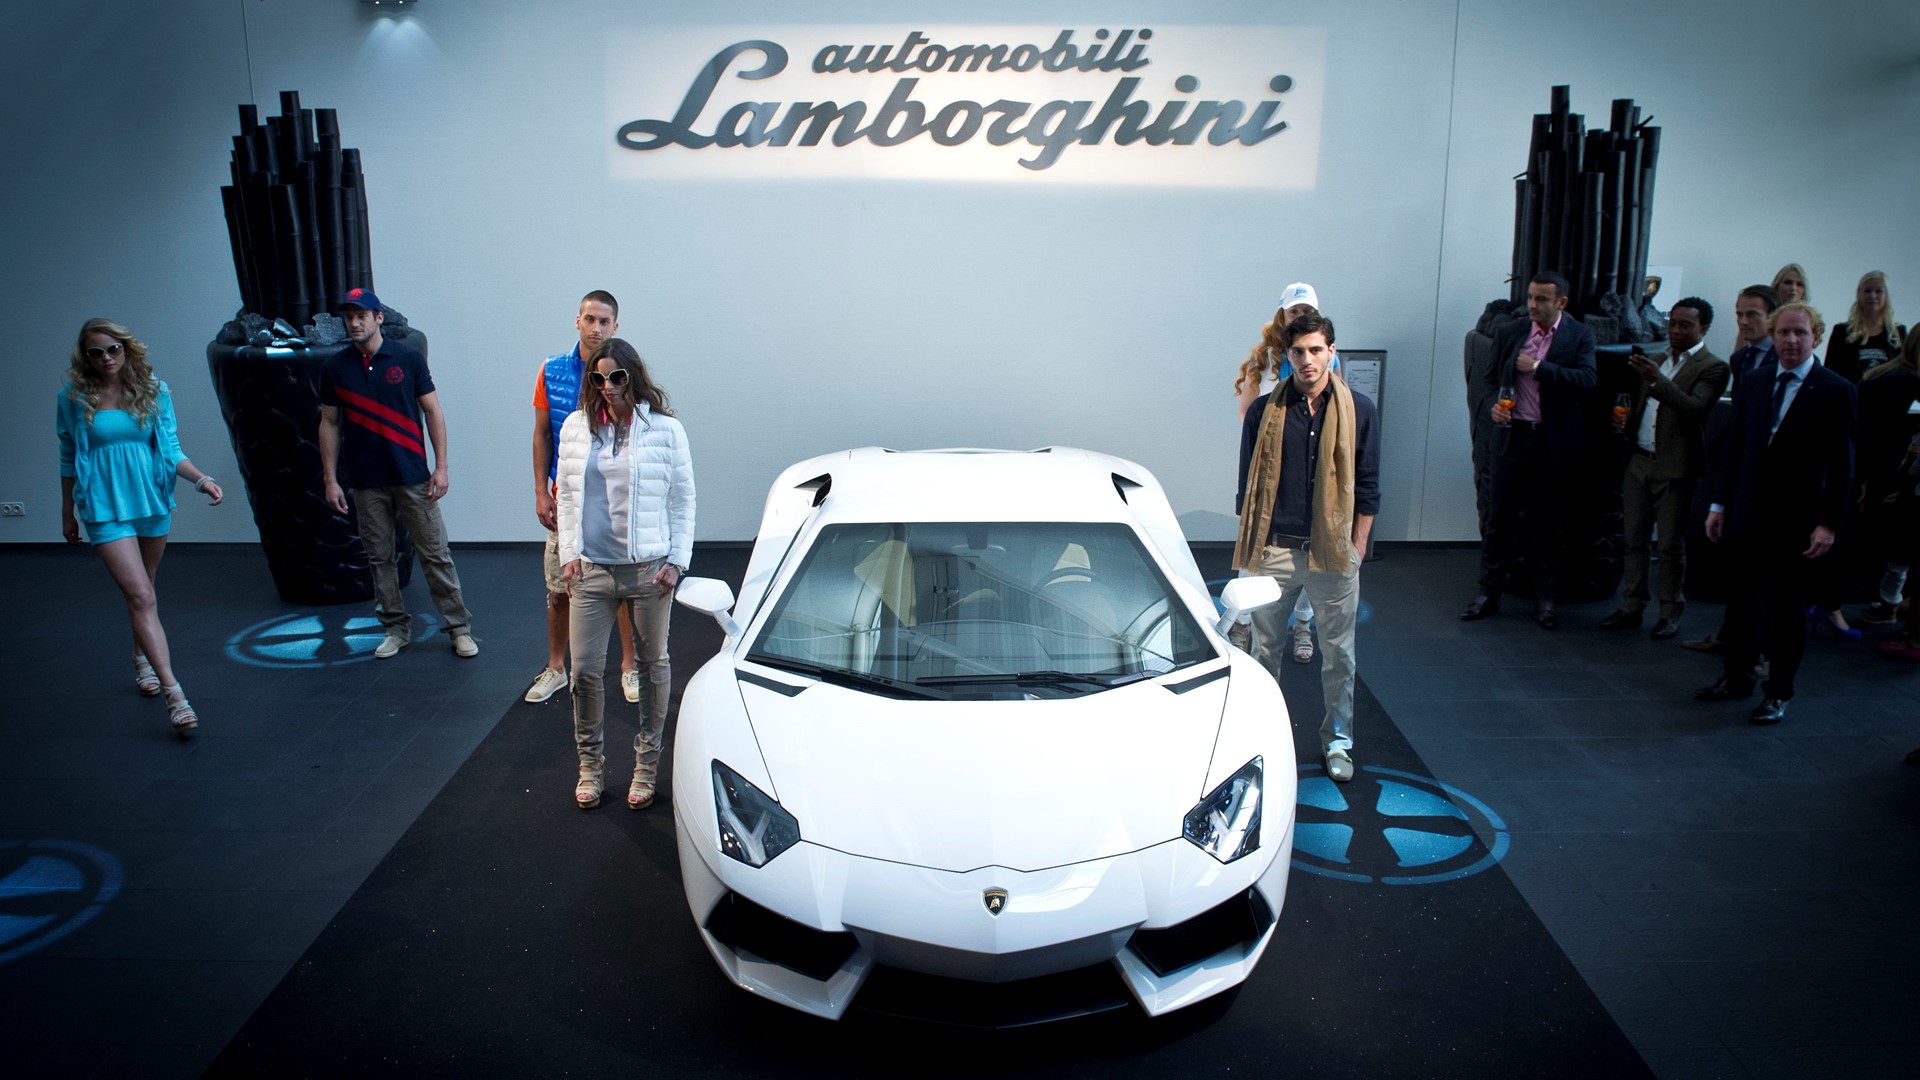 Collezione Automobili Lamborghini Fashion Show in Leusden, NL.